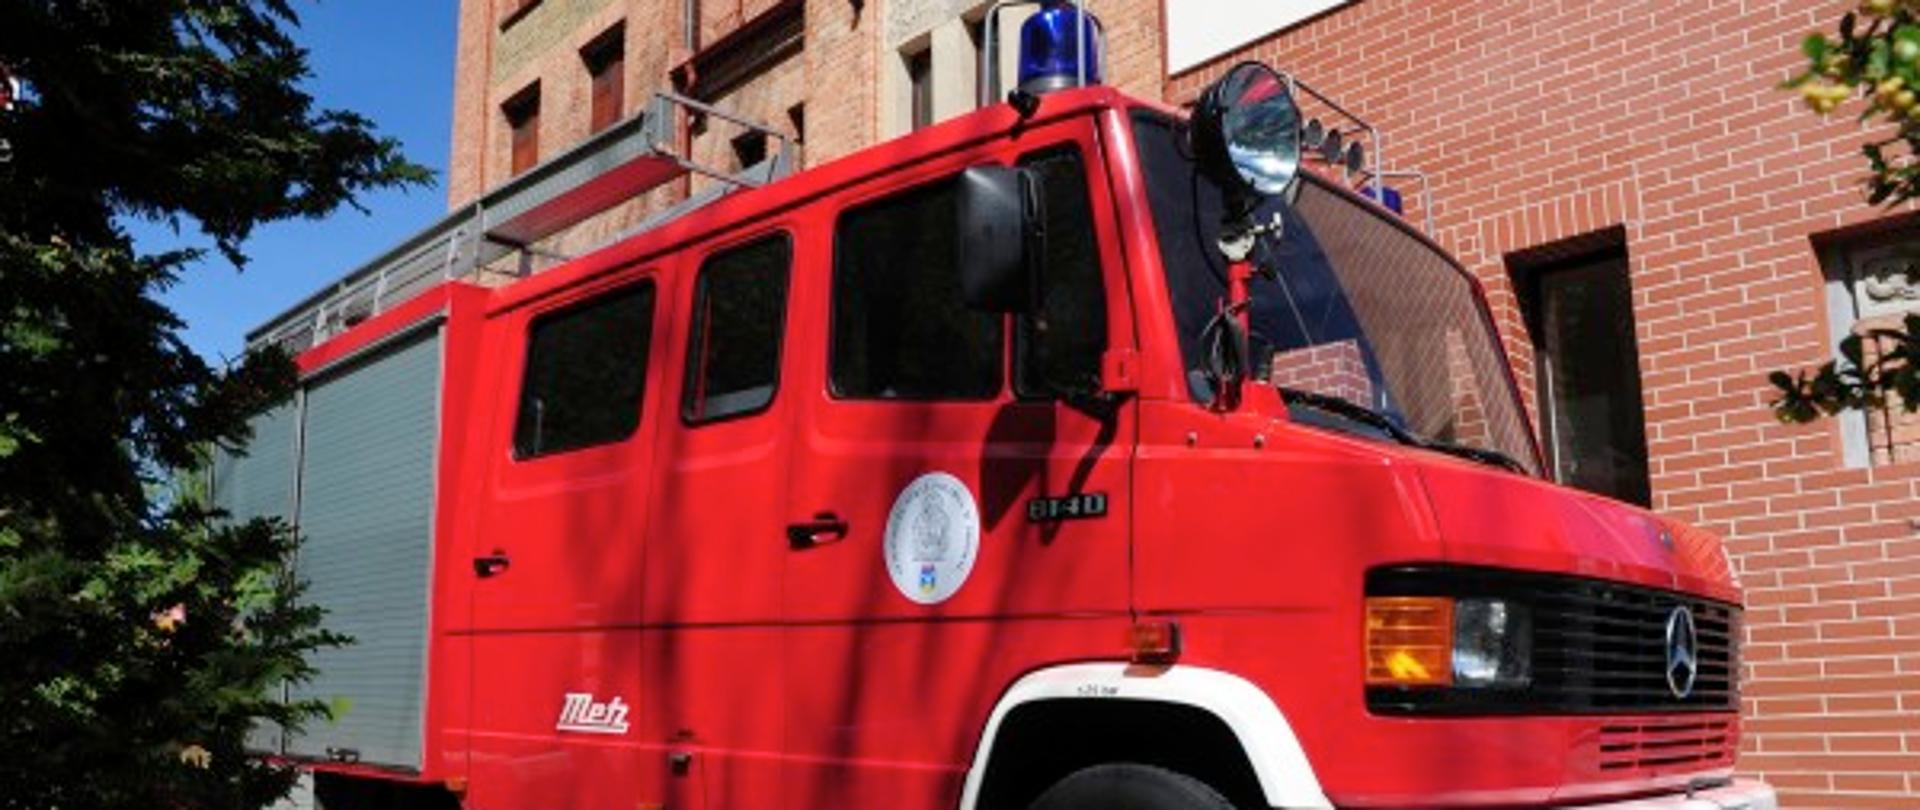 Samochód lekki ratowniczo gaśniczy mercedes w kolorze czerwonym stojący przy budynku Komendy Miejskiej PSP w Sopocie